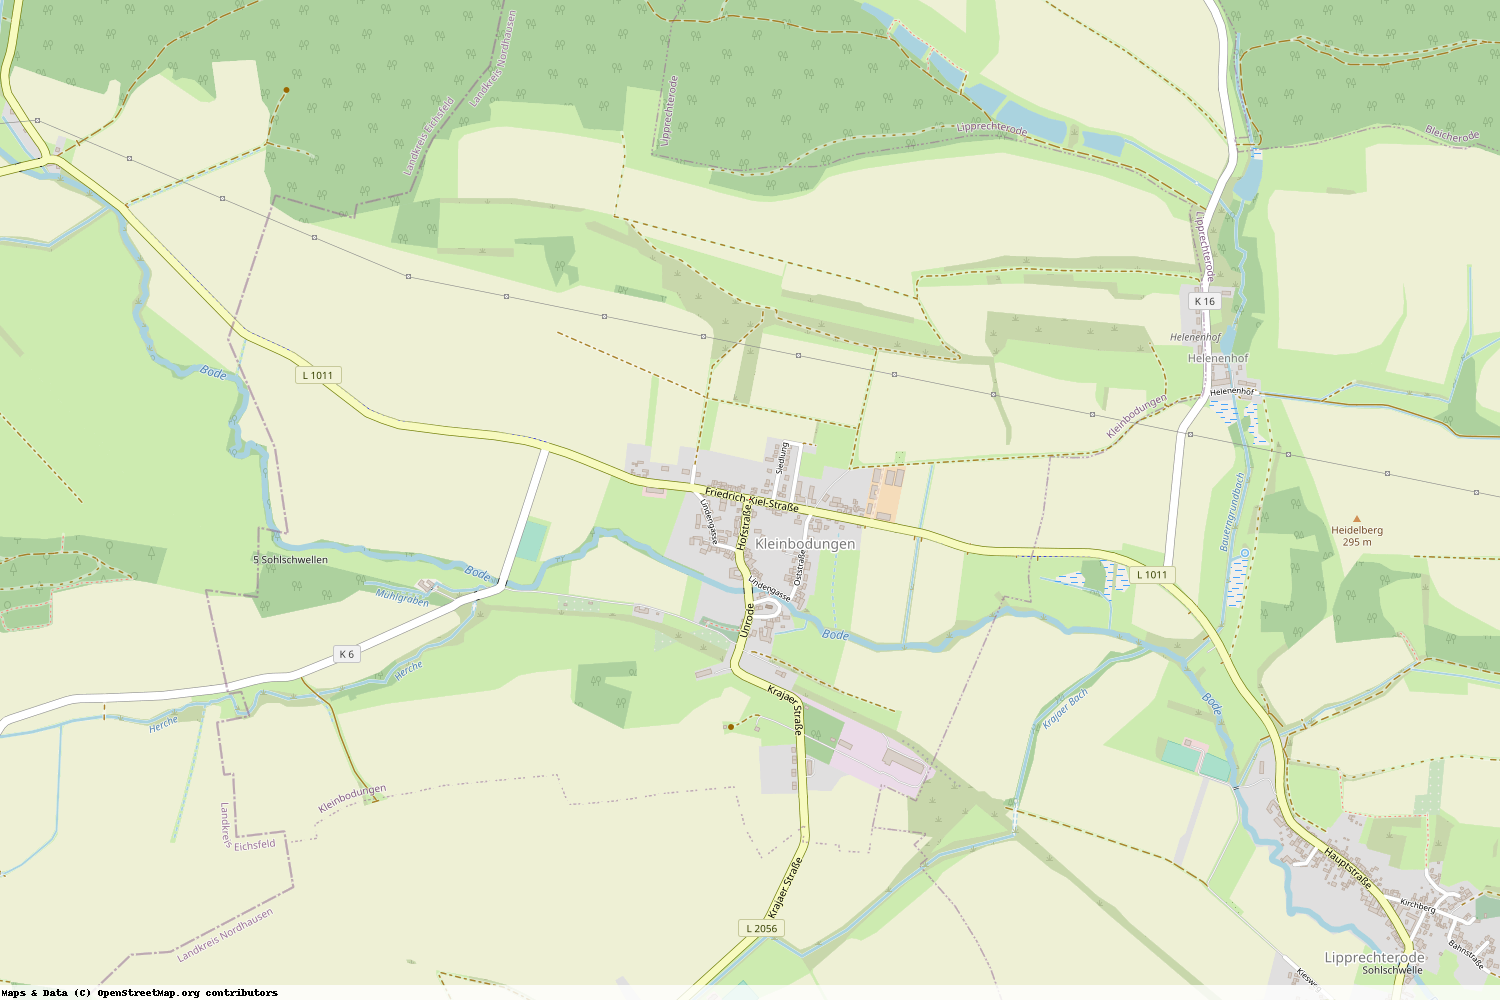 Ist gerade Stromausfall in Thüringen - Nordhausen - Kleinbodungen?